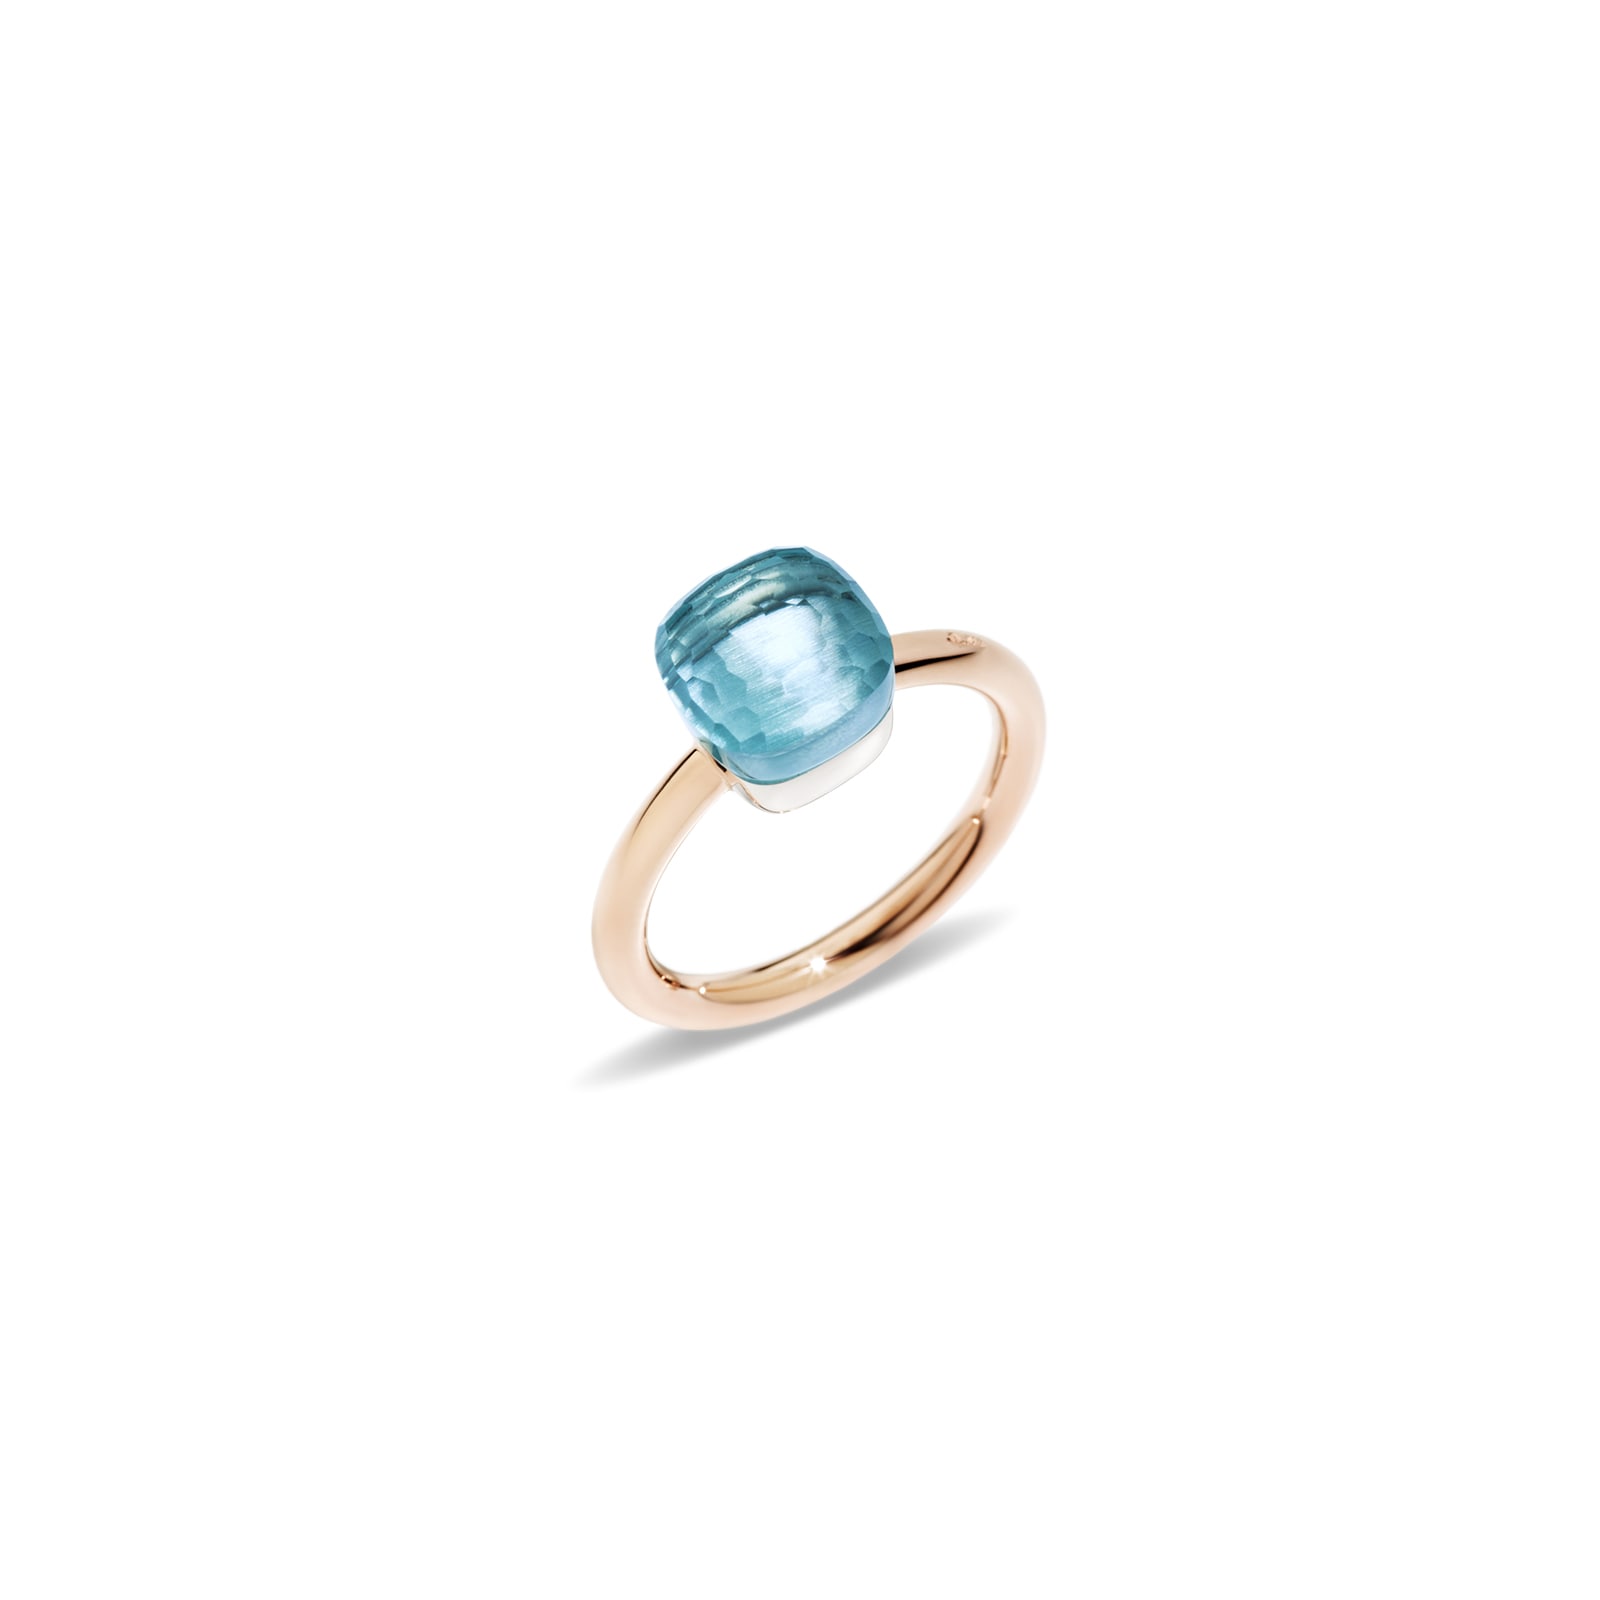 Nudo Petit 18ct Rose & White Gold Blue Topaz Ring - Ring Size N